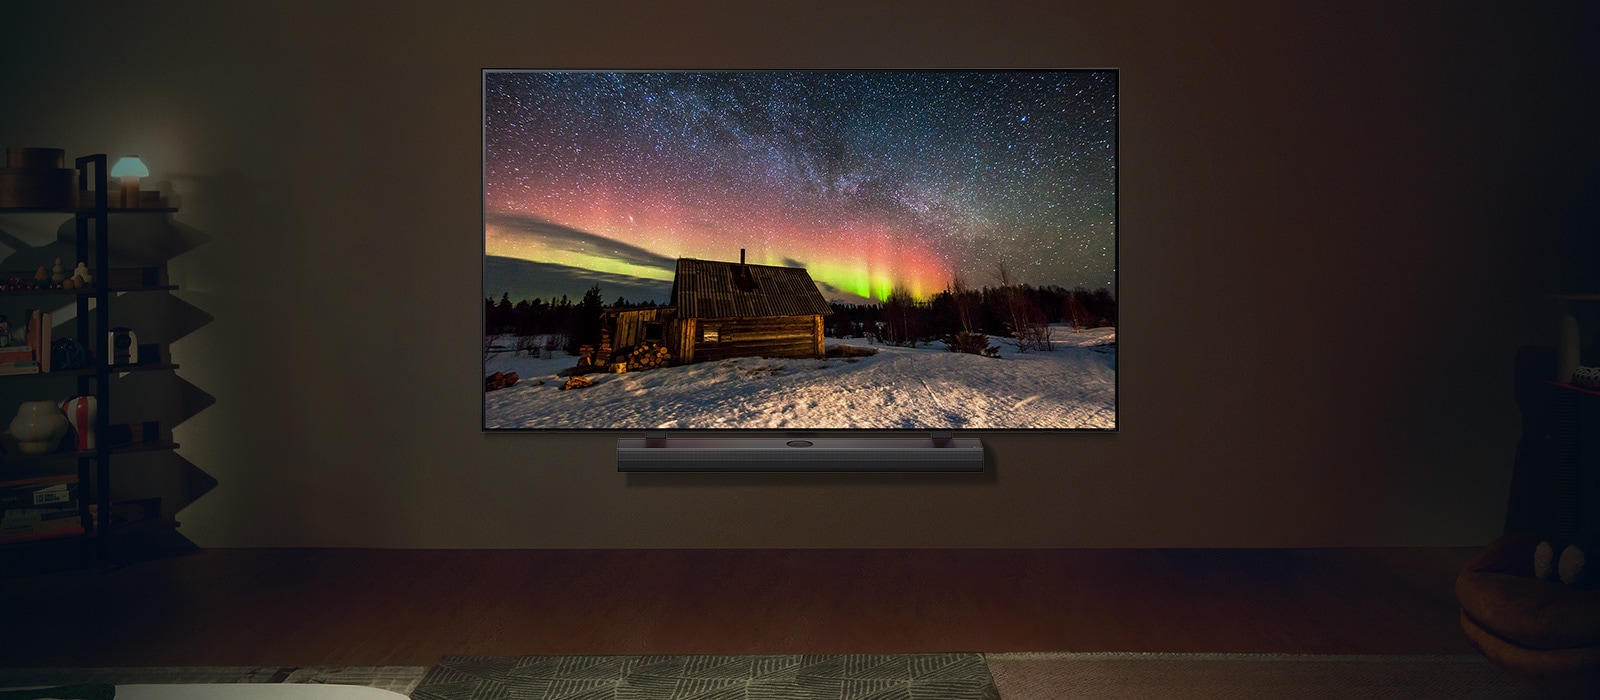 LG TV QNED  y LG Soundbar en un espacio moderno por la noche. La imagen en pantalla de la aurora boreal se muestra con los niveles de brillo ideales.